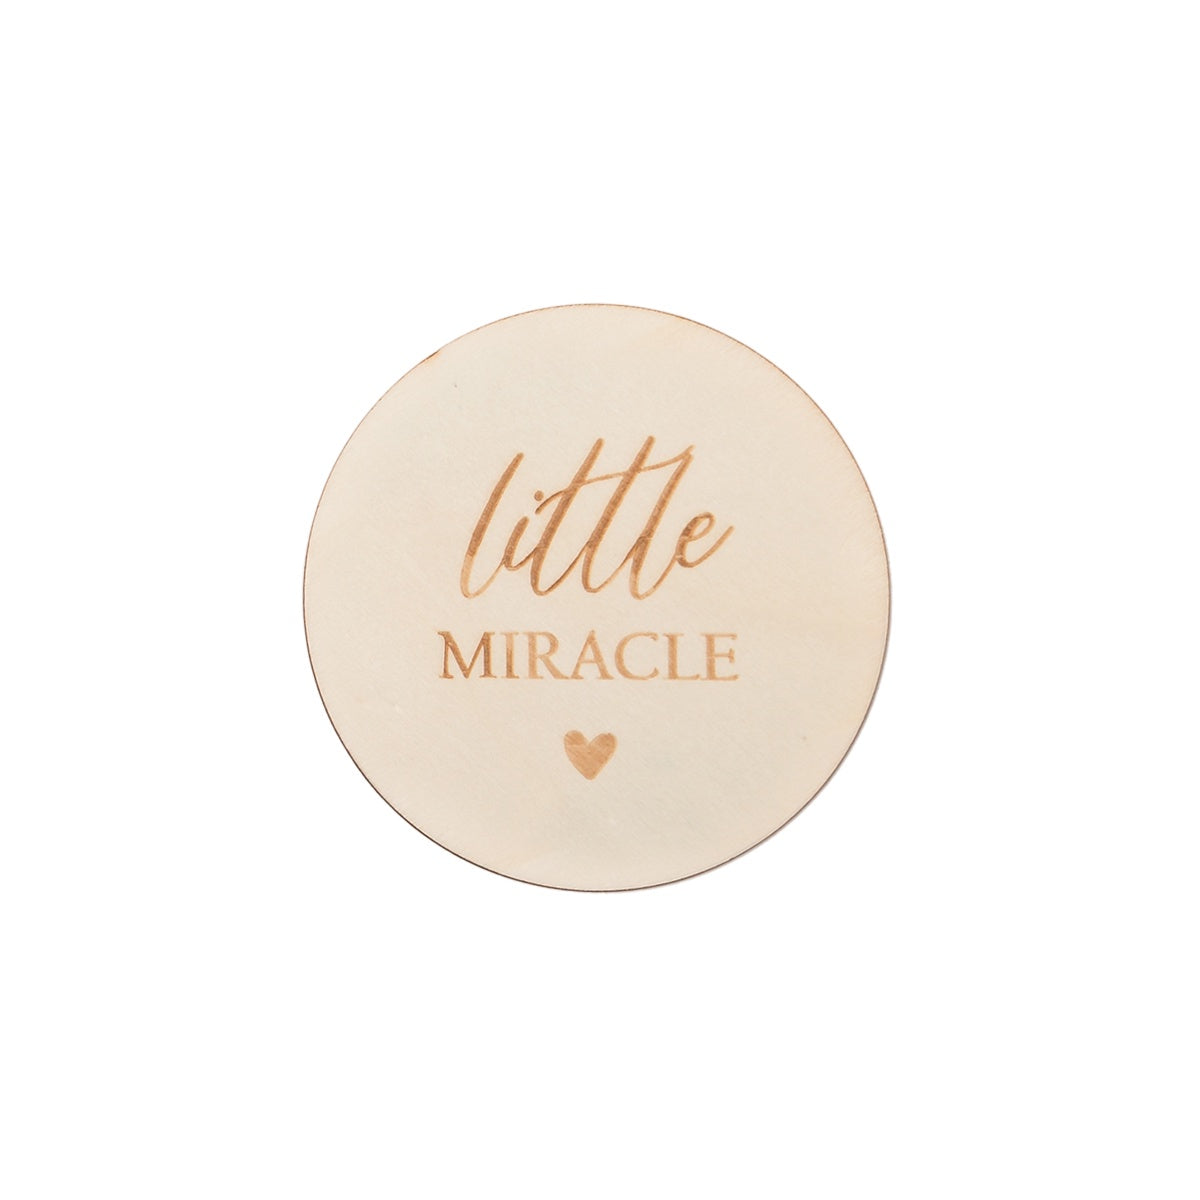 Milestone Card - Little miracle